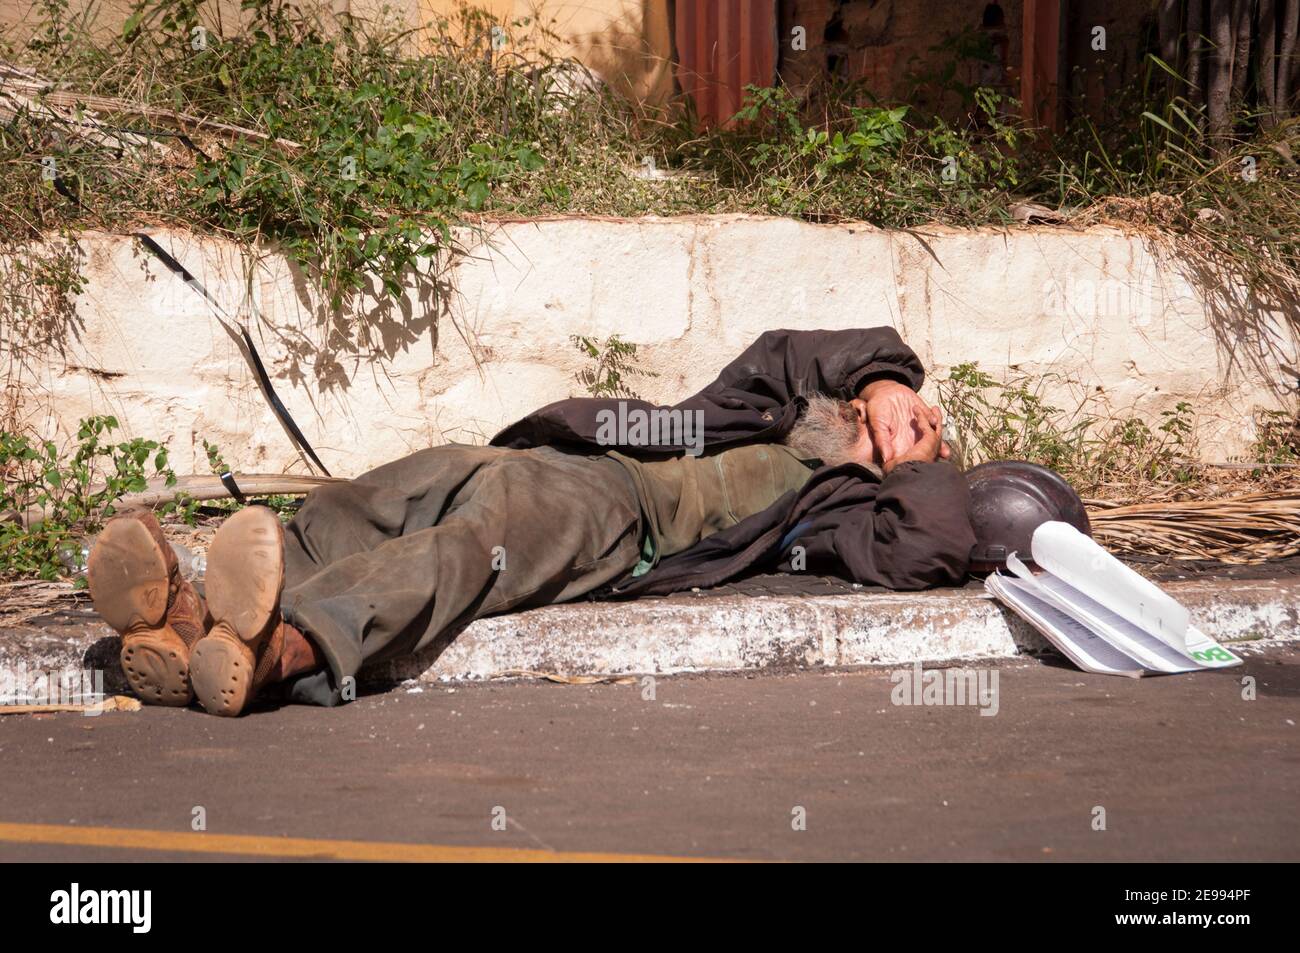 BRASILIA, BRASILIEN - 6. JUNI 2015: Obdachloser schläft auf dem Bürgersteig. Obdachlosigkeit ist eines der wichtigsten sozialen Themen in Ballungsräumen in Brasilien. Stockfoto